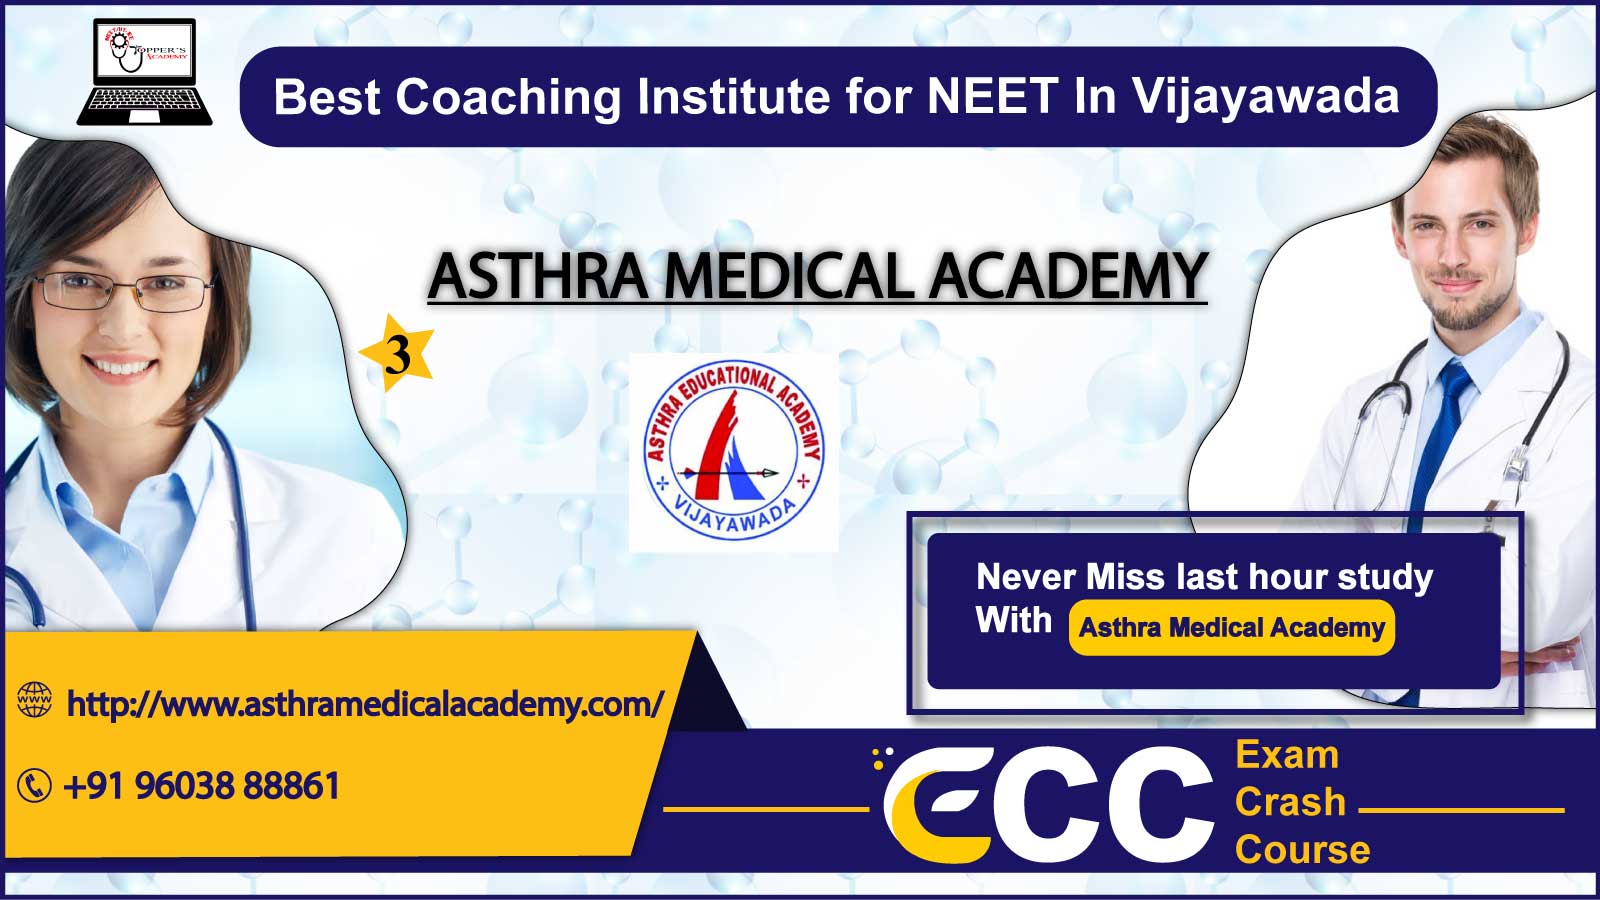 Asthra NEET Academy in Vijayawada